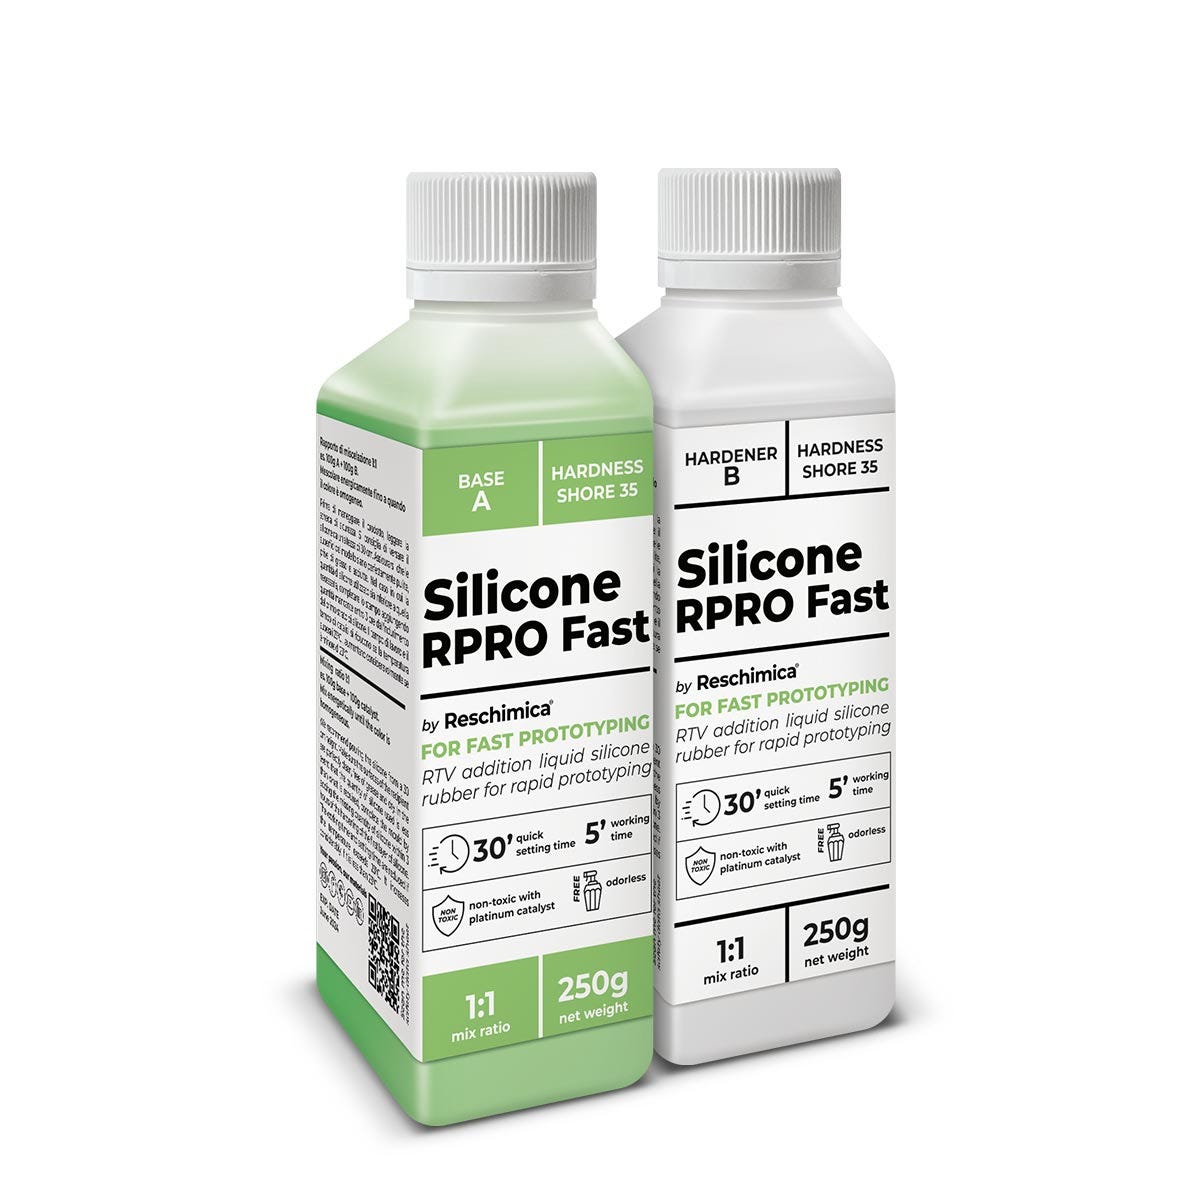 R PRO 20 gomma di silicone liquida di media durezza 1:1 , non tossica e  catalizzatore al platino (1 kg)